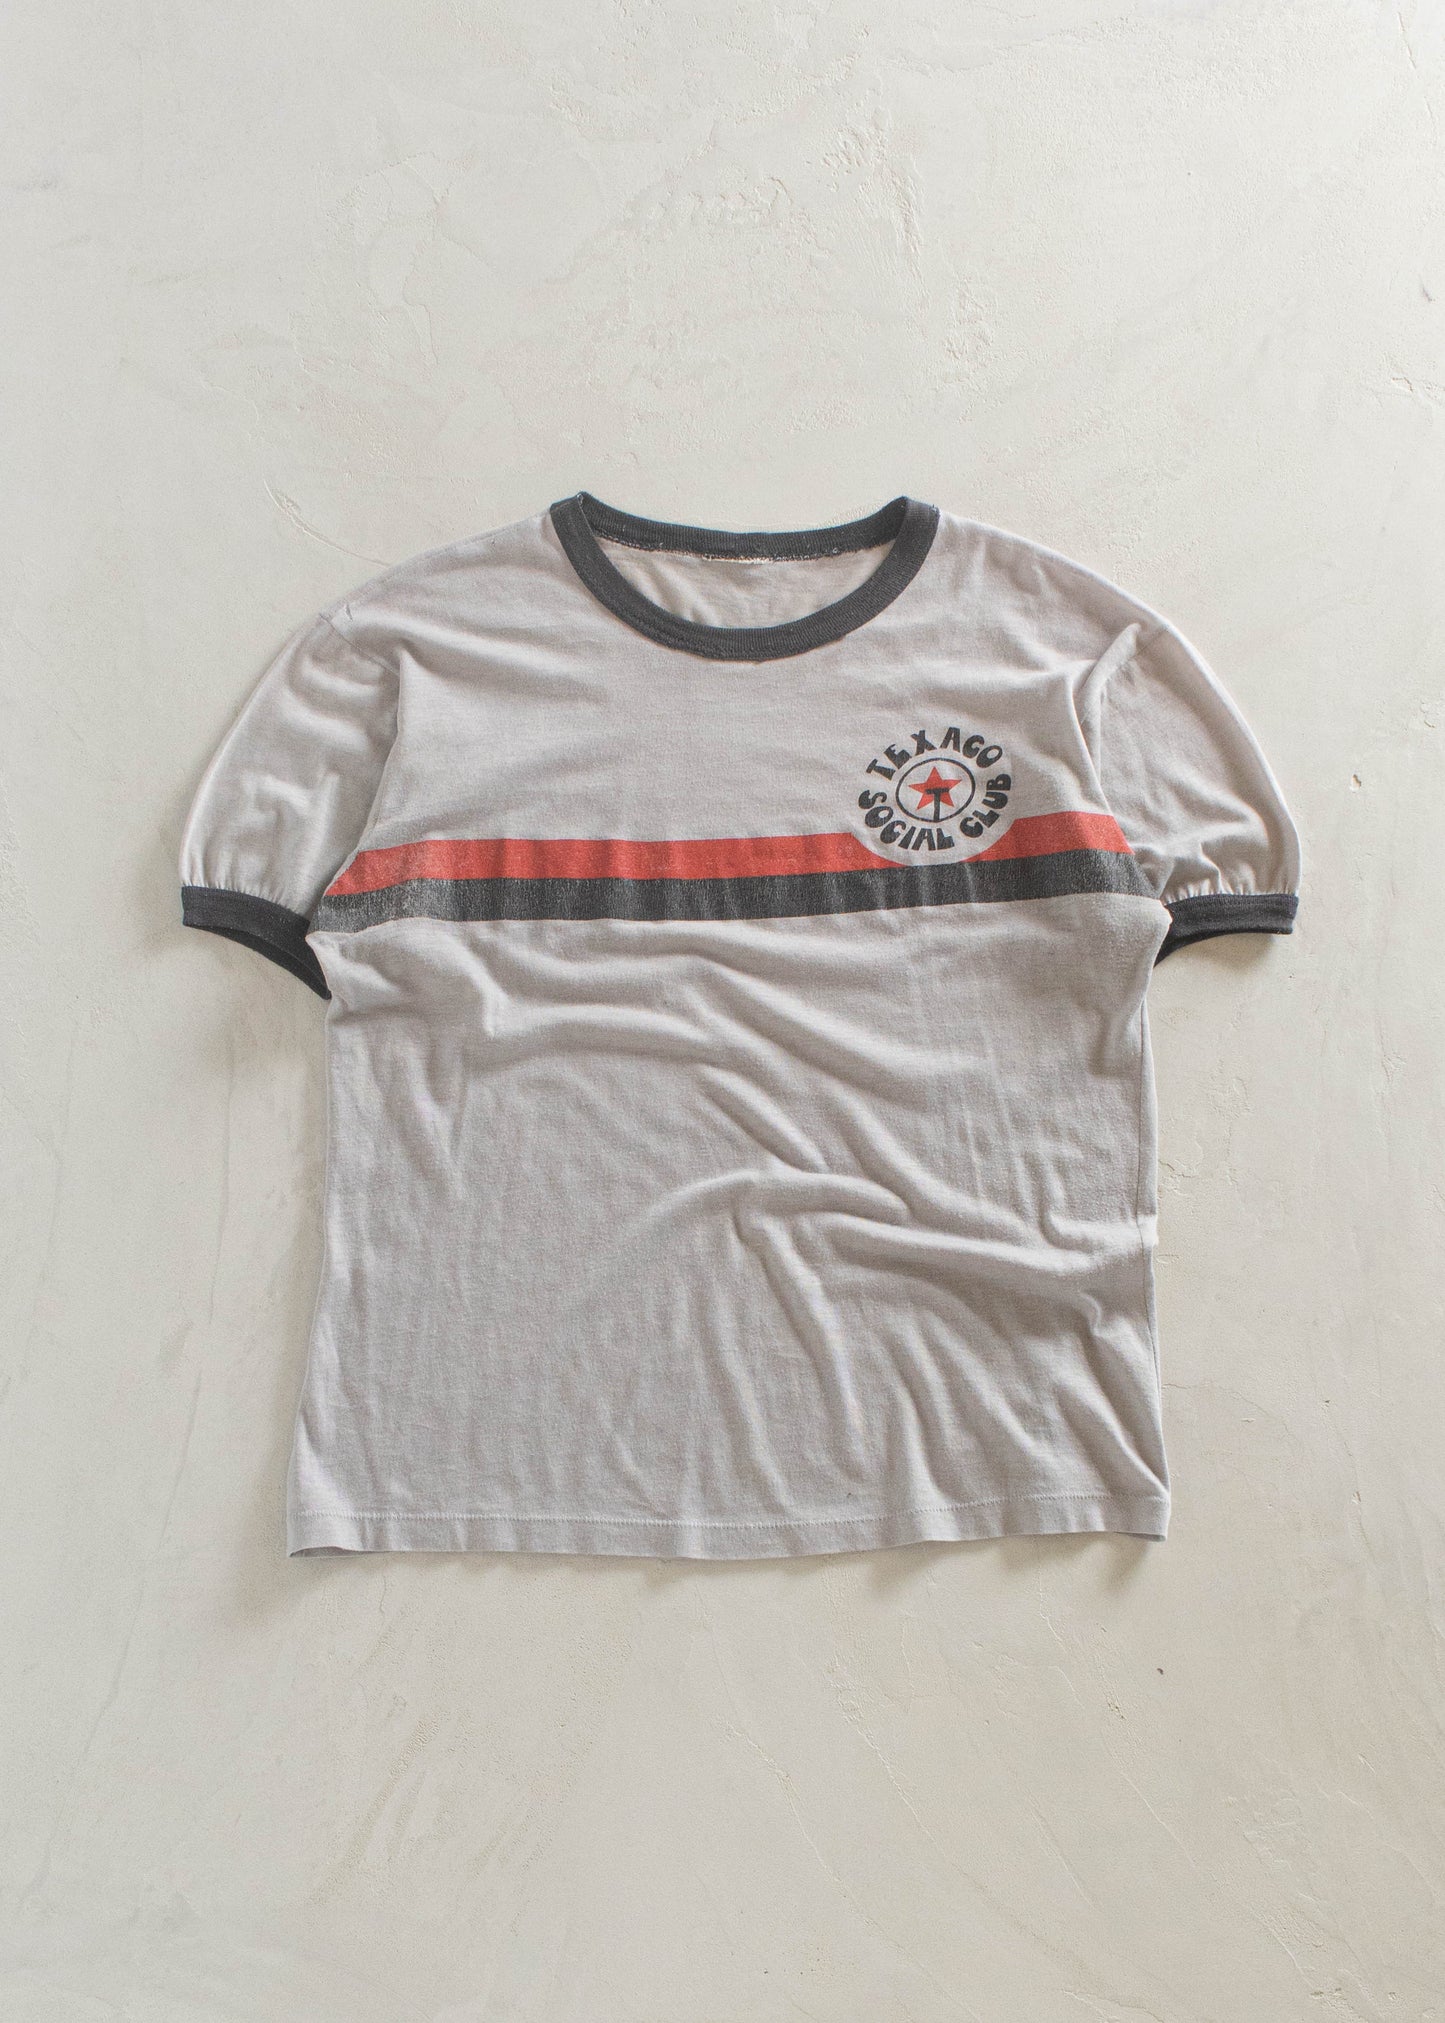 1980s Texaco Social Club T-Shirt Size M/L